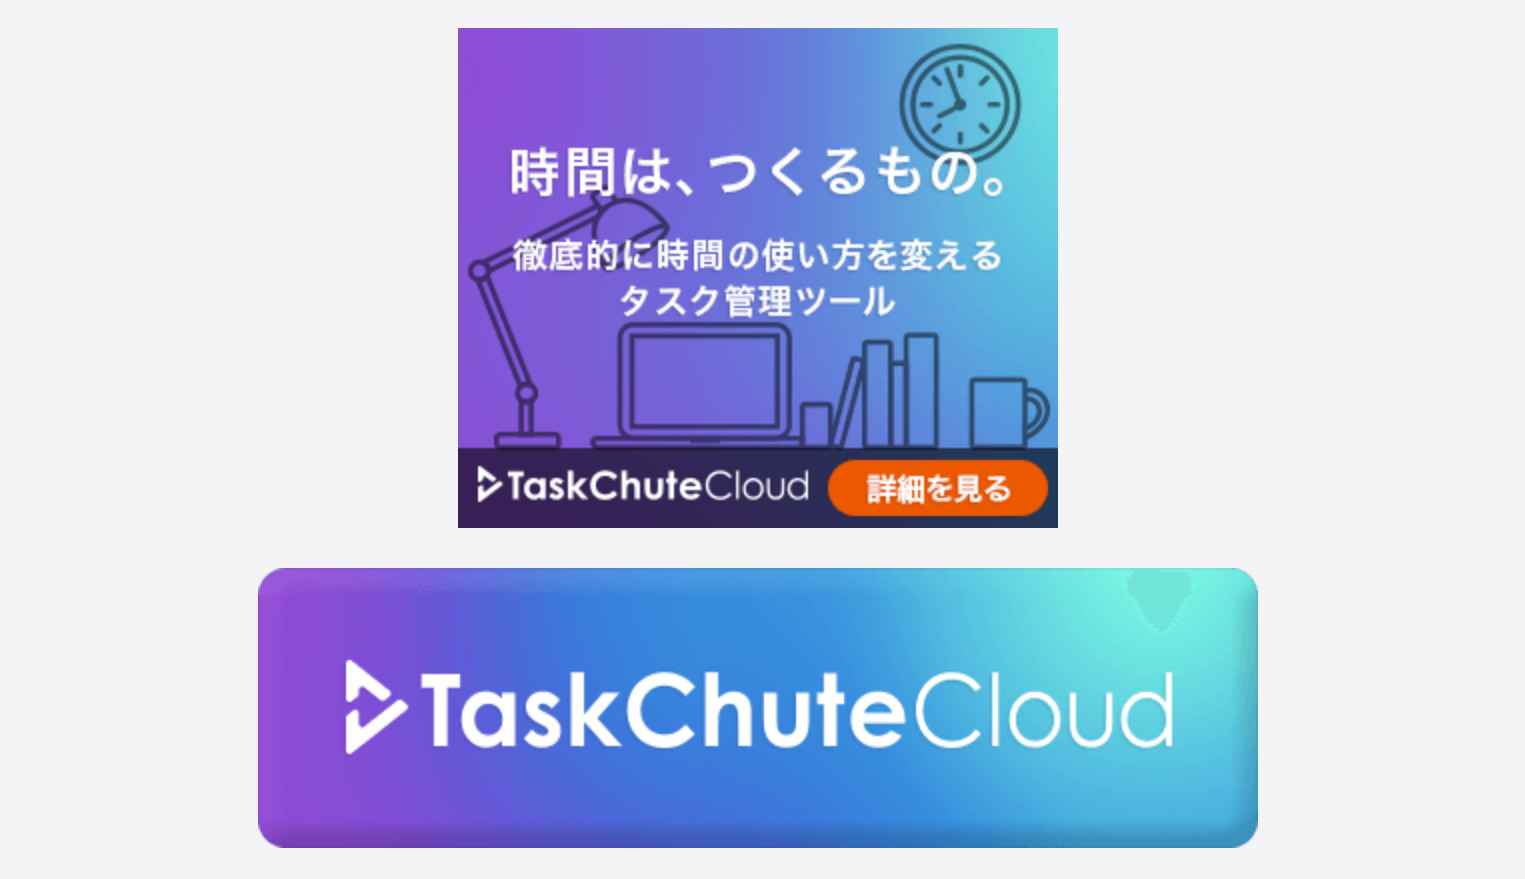 TaskChute Cloudのアフィリエイト機能を使う方法